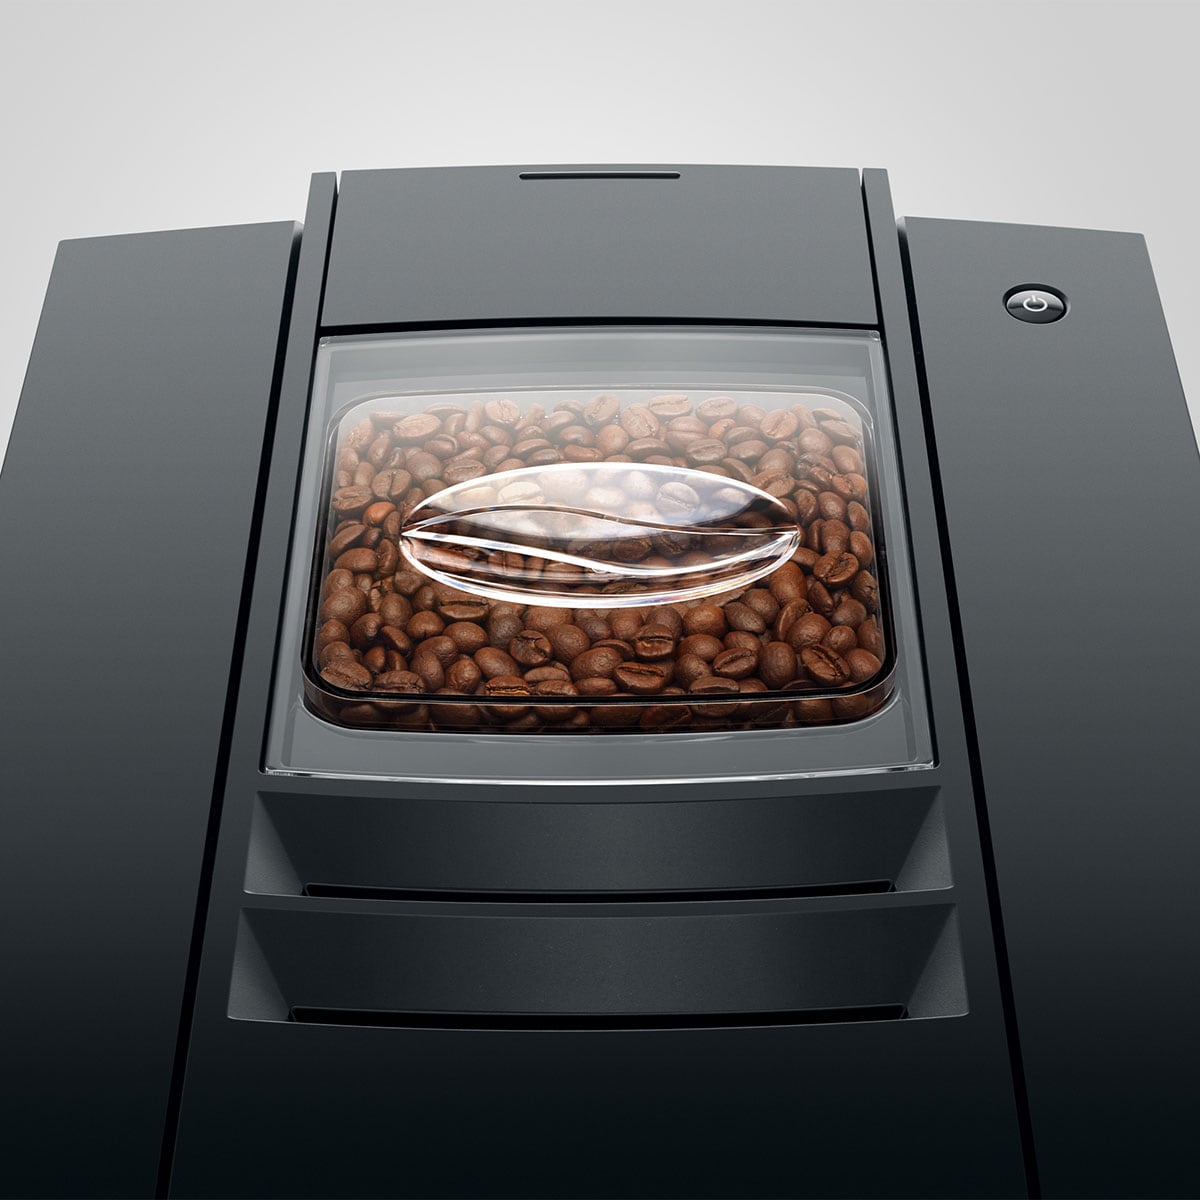 JURA E4 Fully Automatic Espresso Machine